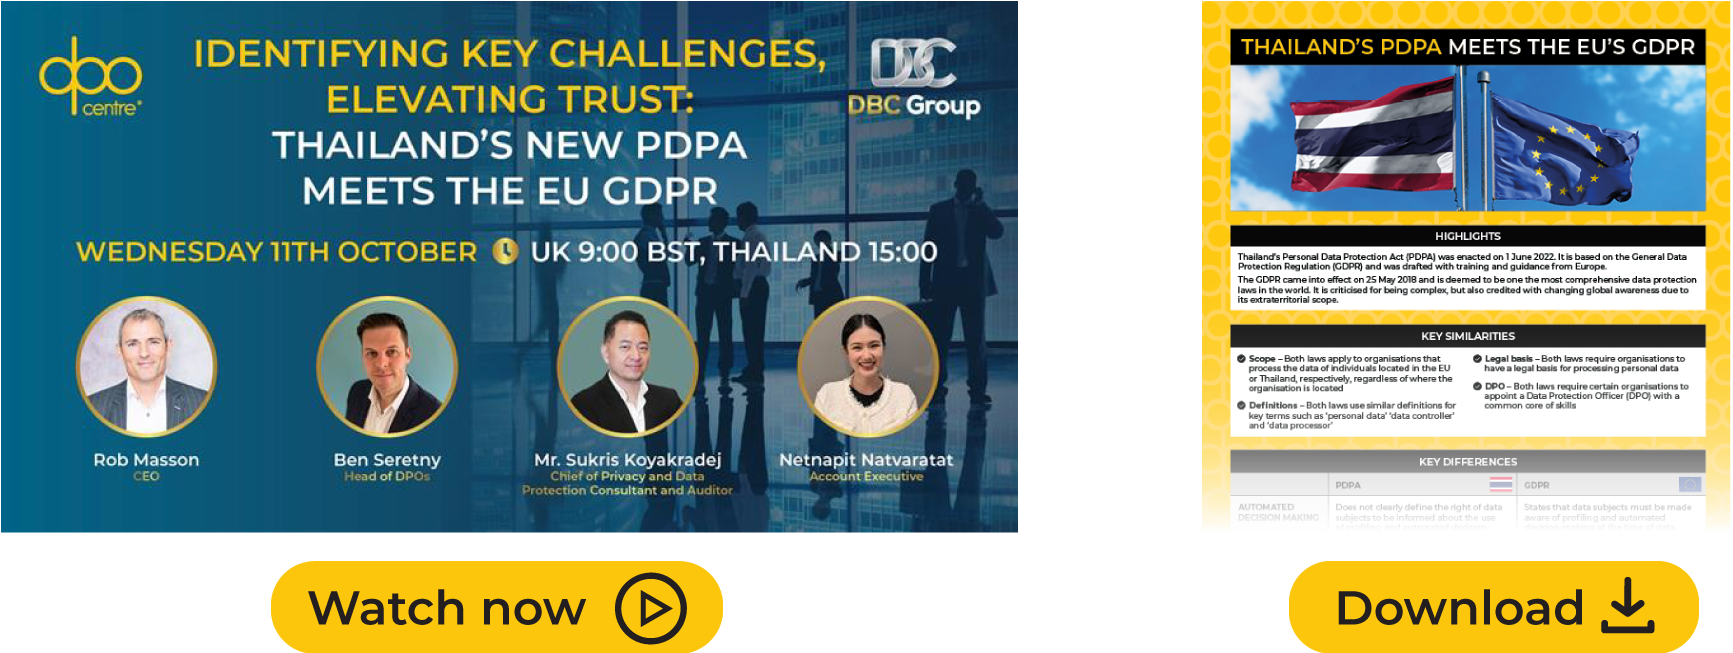 Thailand’s new PDPA meets the EU GDPR 